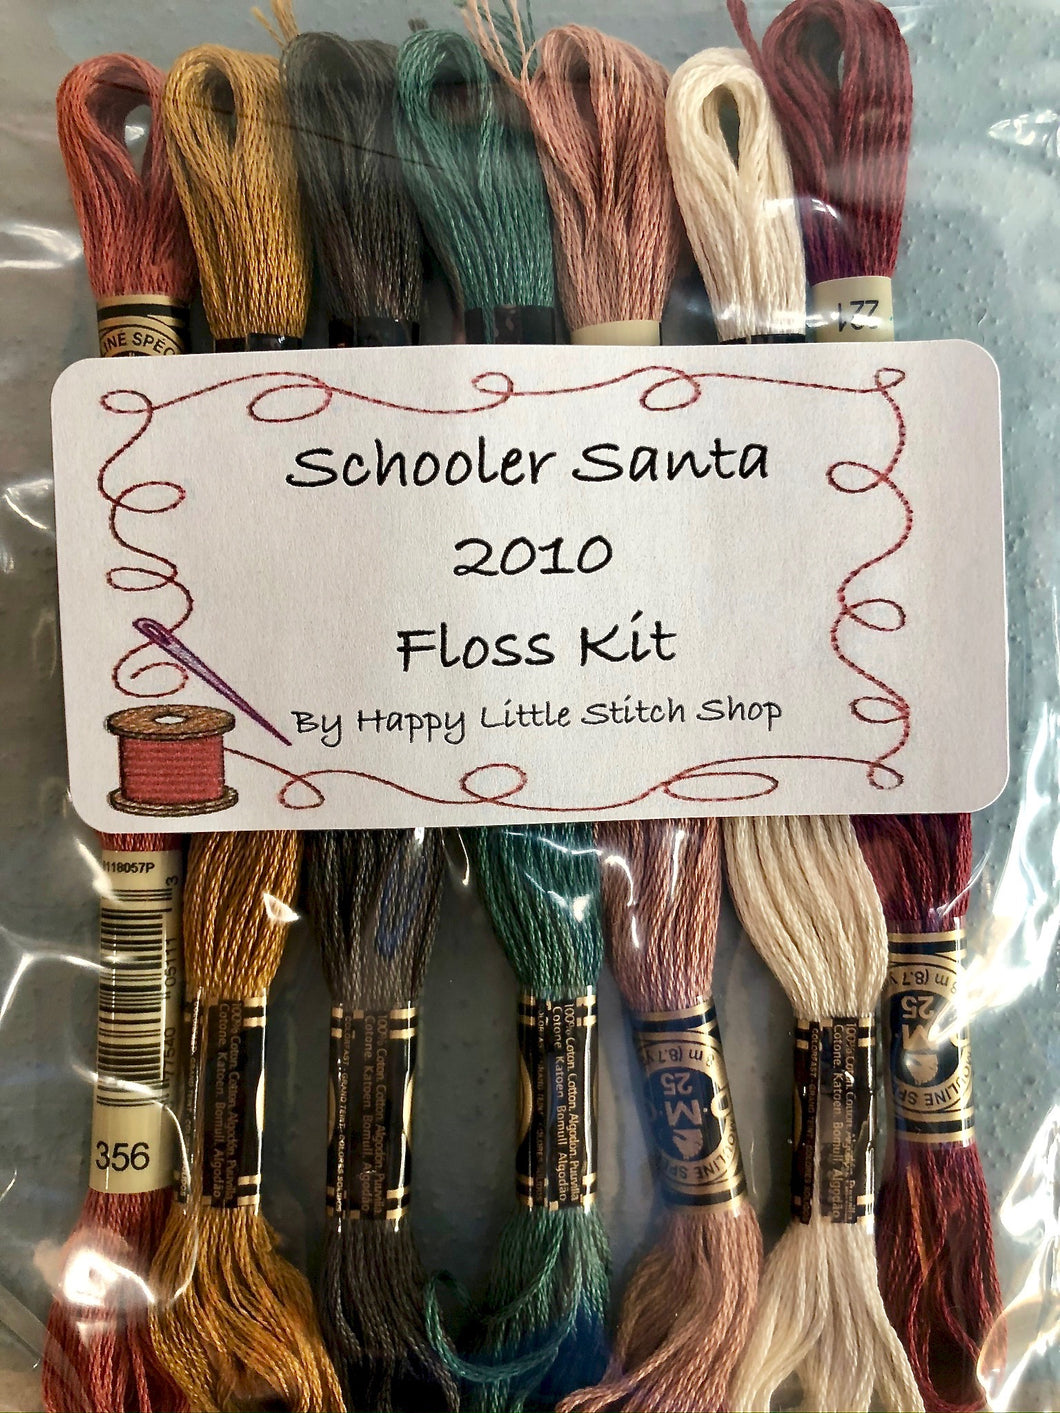 Floss Kit - Schooler Santa 2010